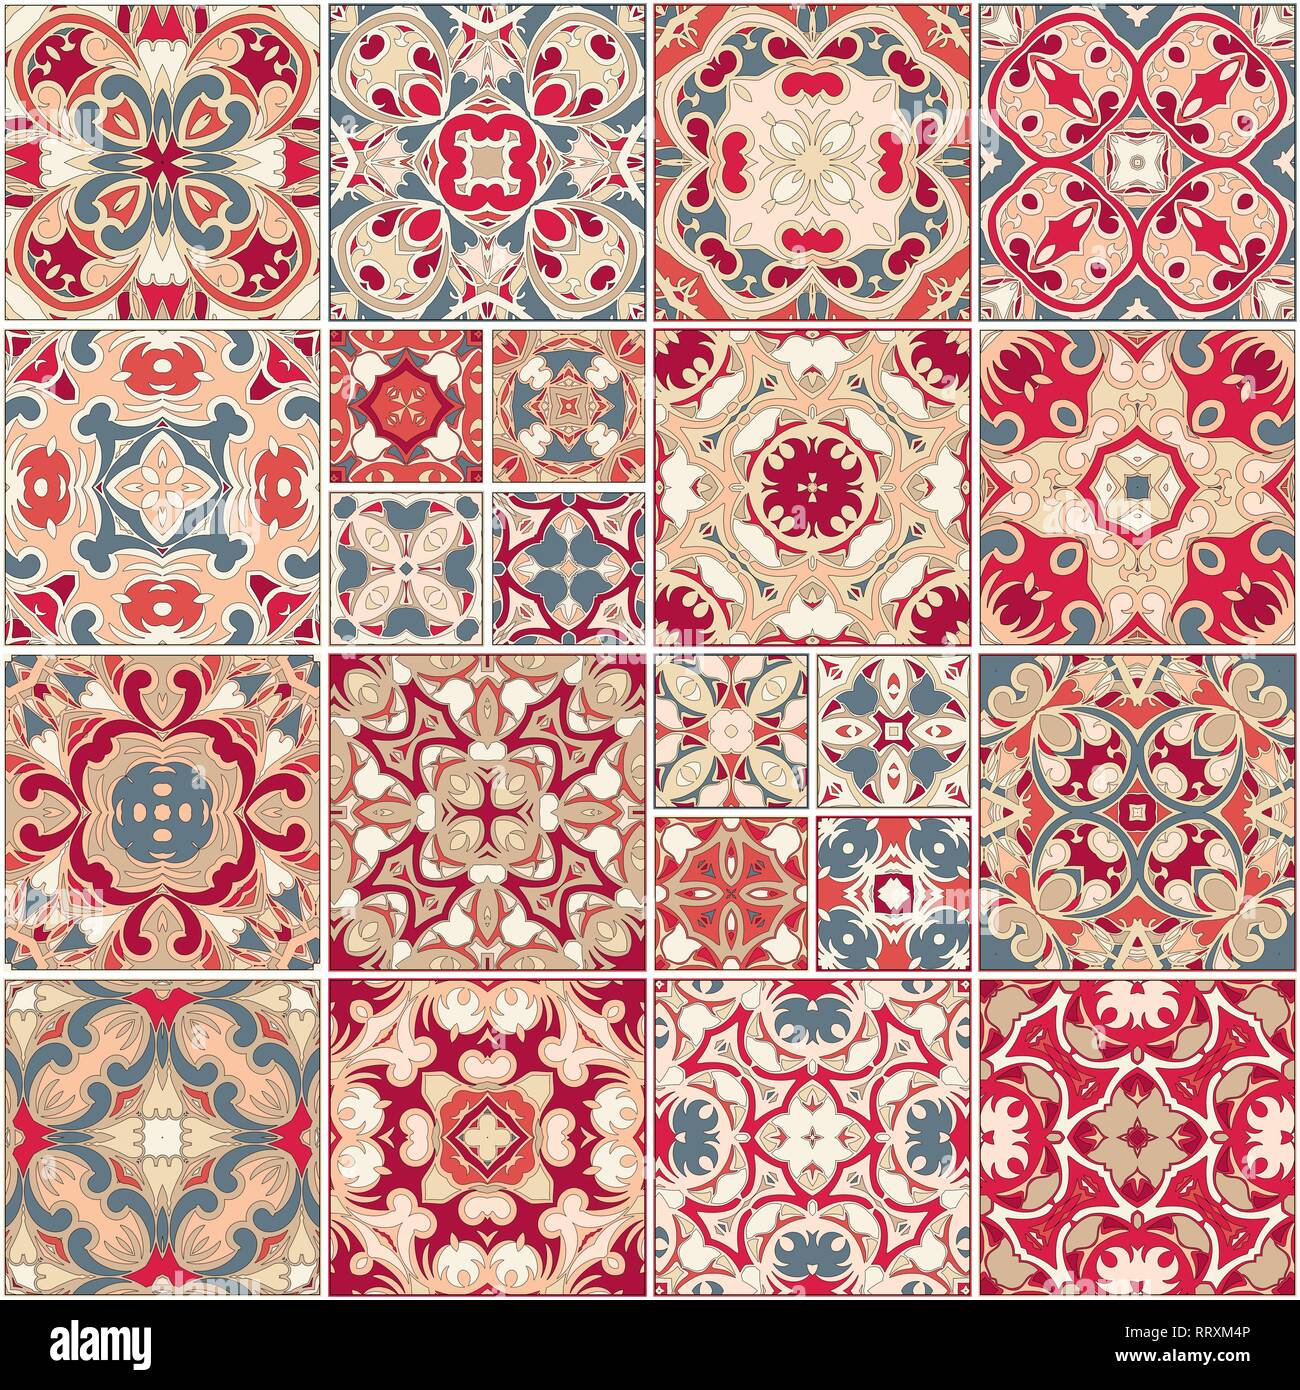 Eine Sammlung von Keramikfliesen in roten Farben. Eine Reihe von quadratischen Muster im ethnischen Stil. Vector Illustration. Stock Vektor